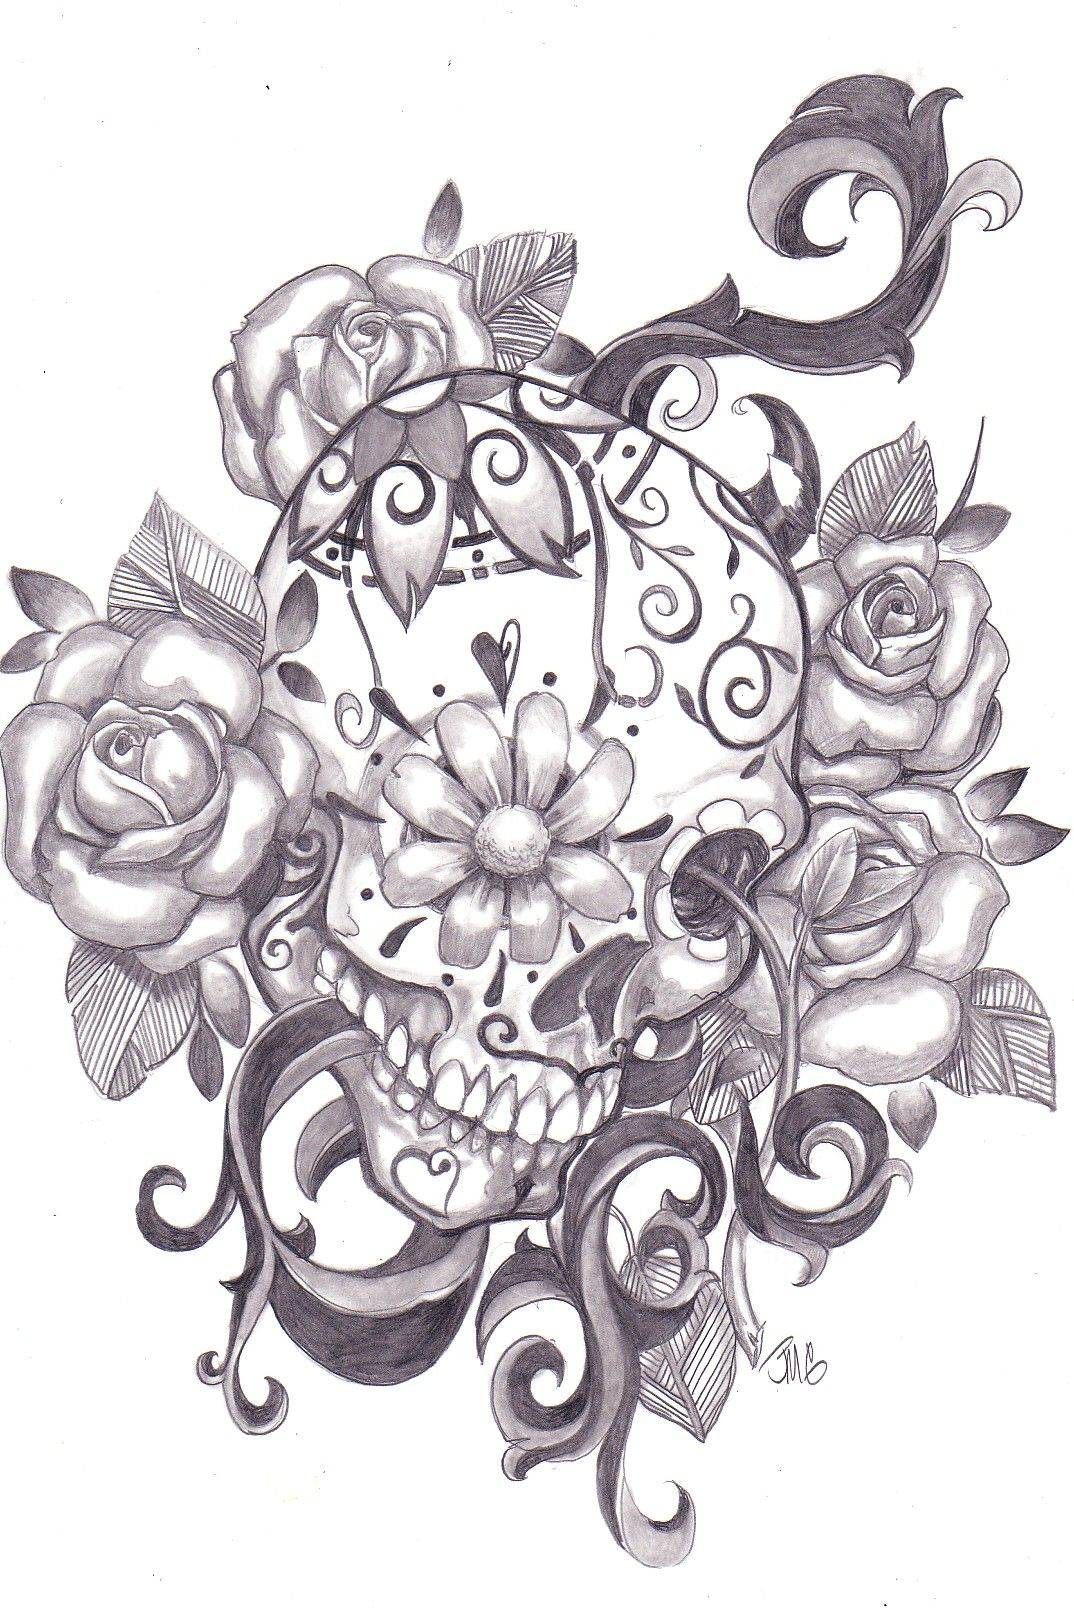 LOVE sugar skull tattoos